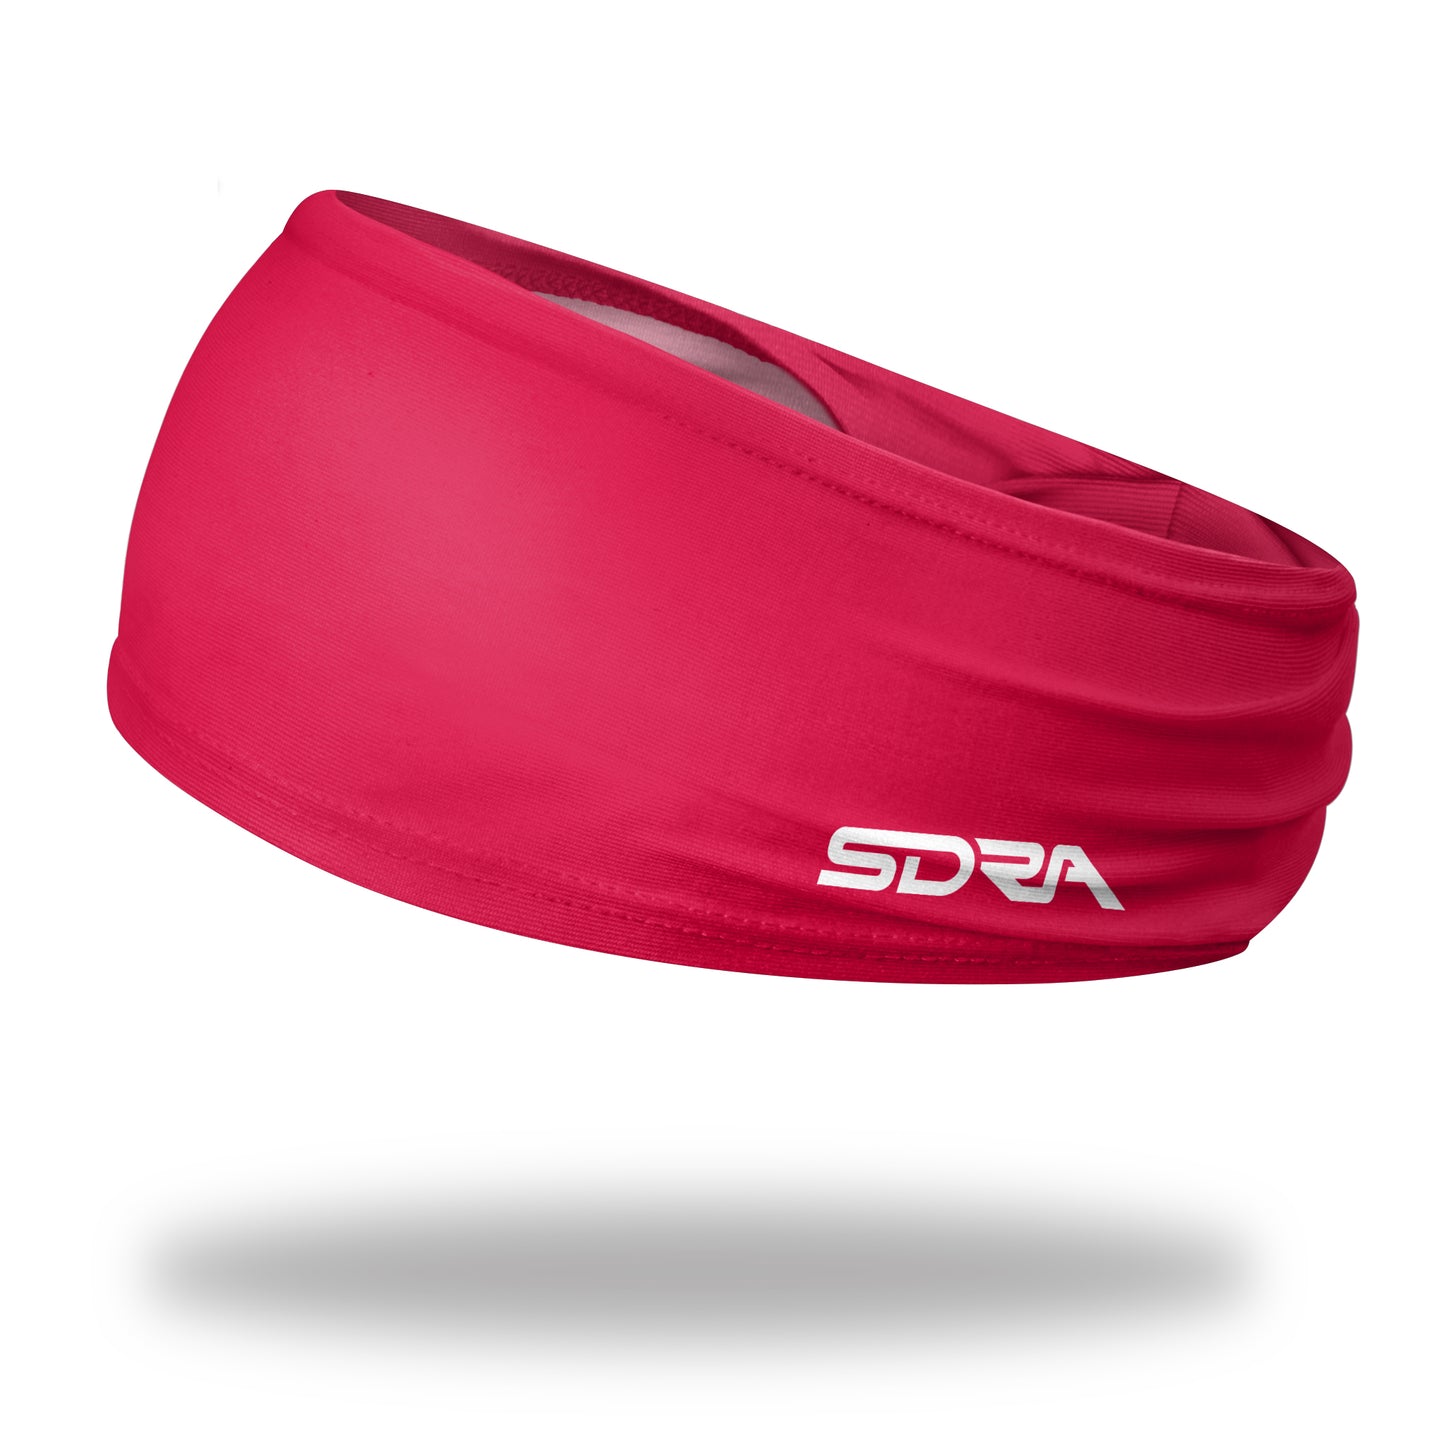 Suddora Red Wide Tapered Non-Slip Headband